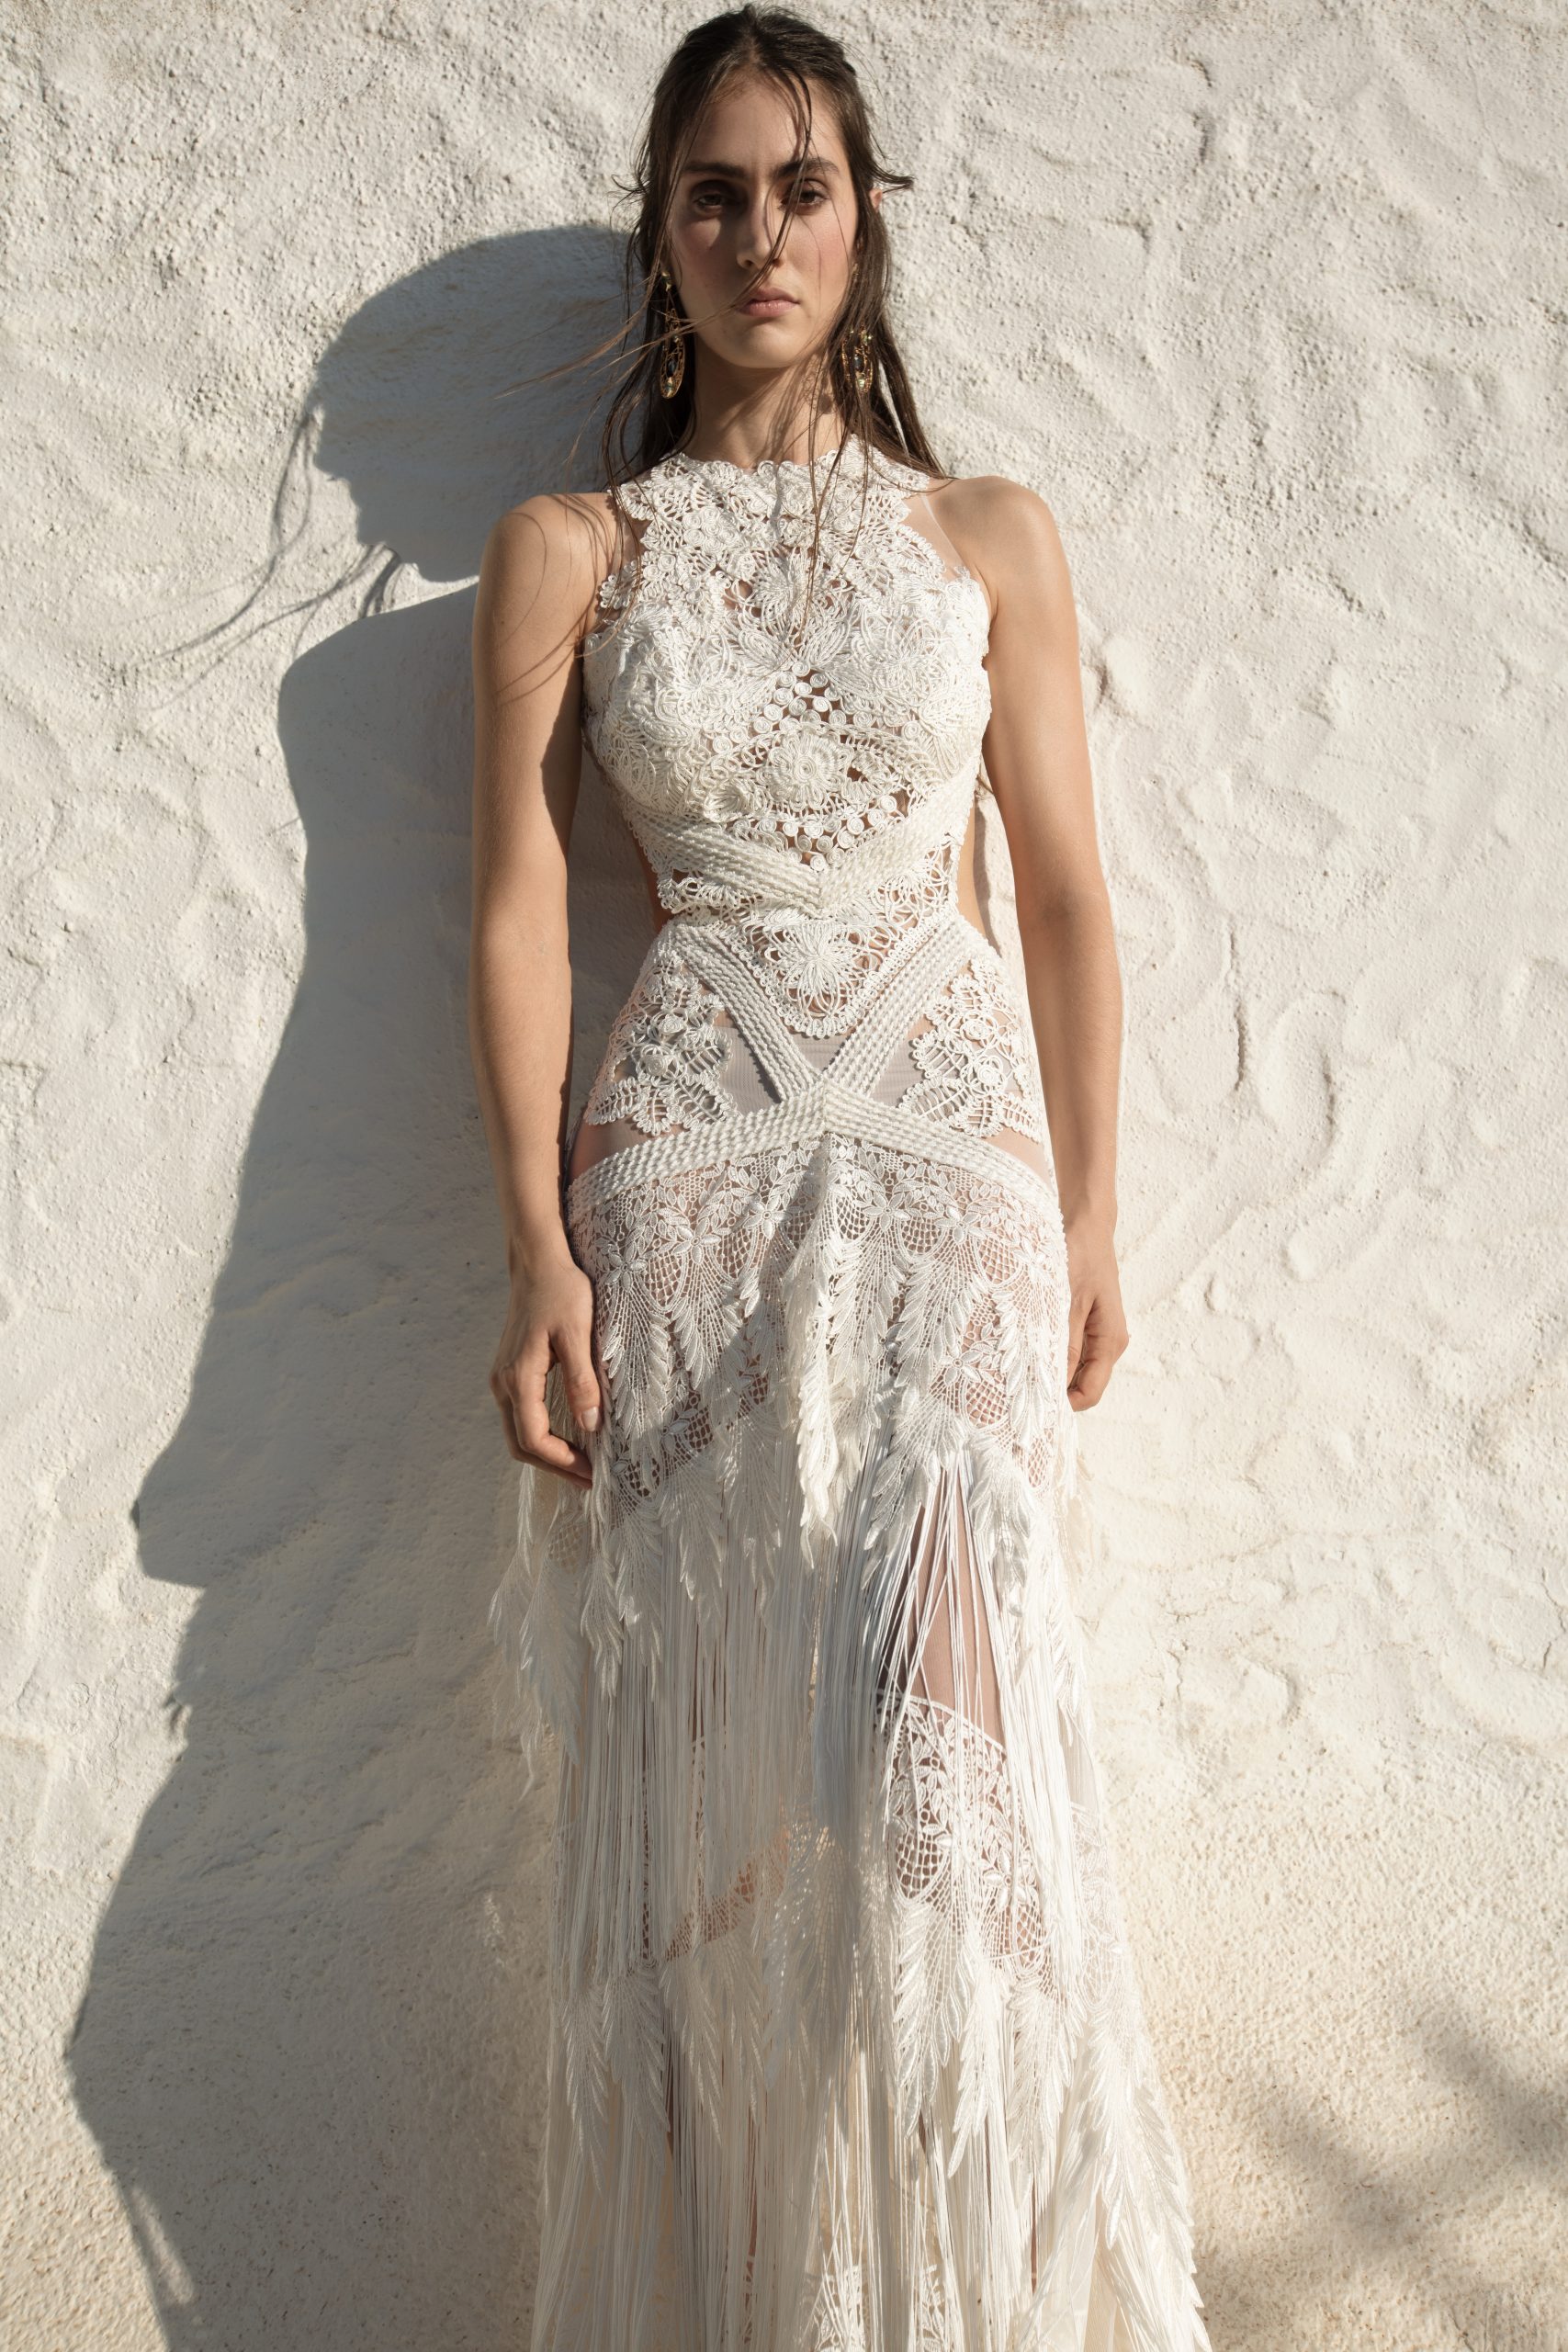 Modelo posa para foto com vestido de noiva boho, na cor branca, de corpete com alças de renda, atrás dela um muro chapiscado.